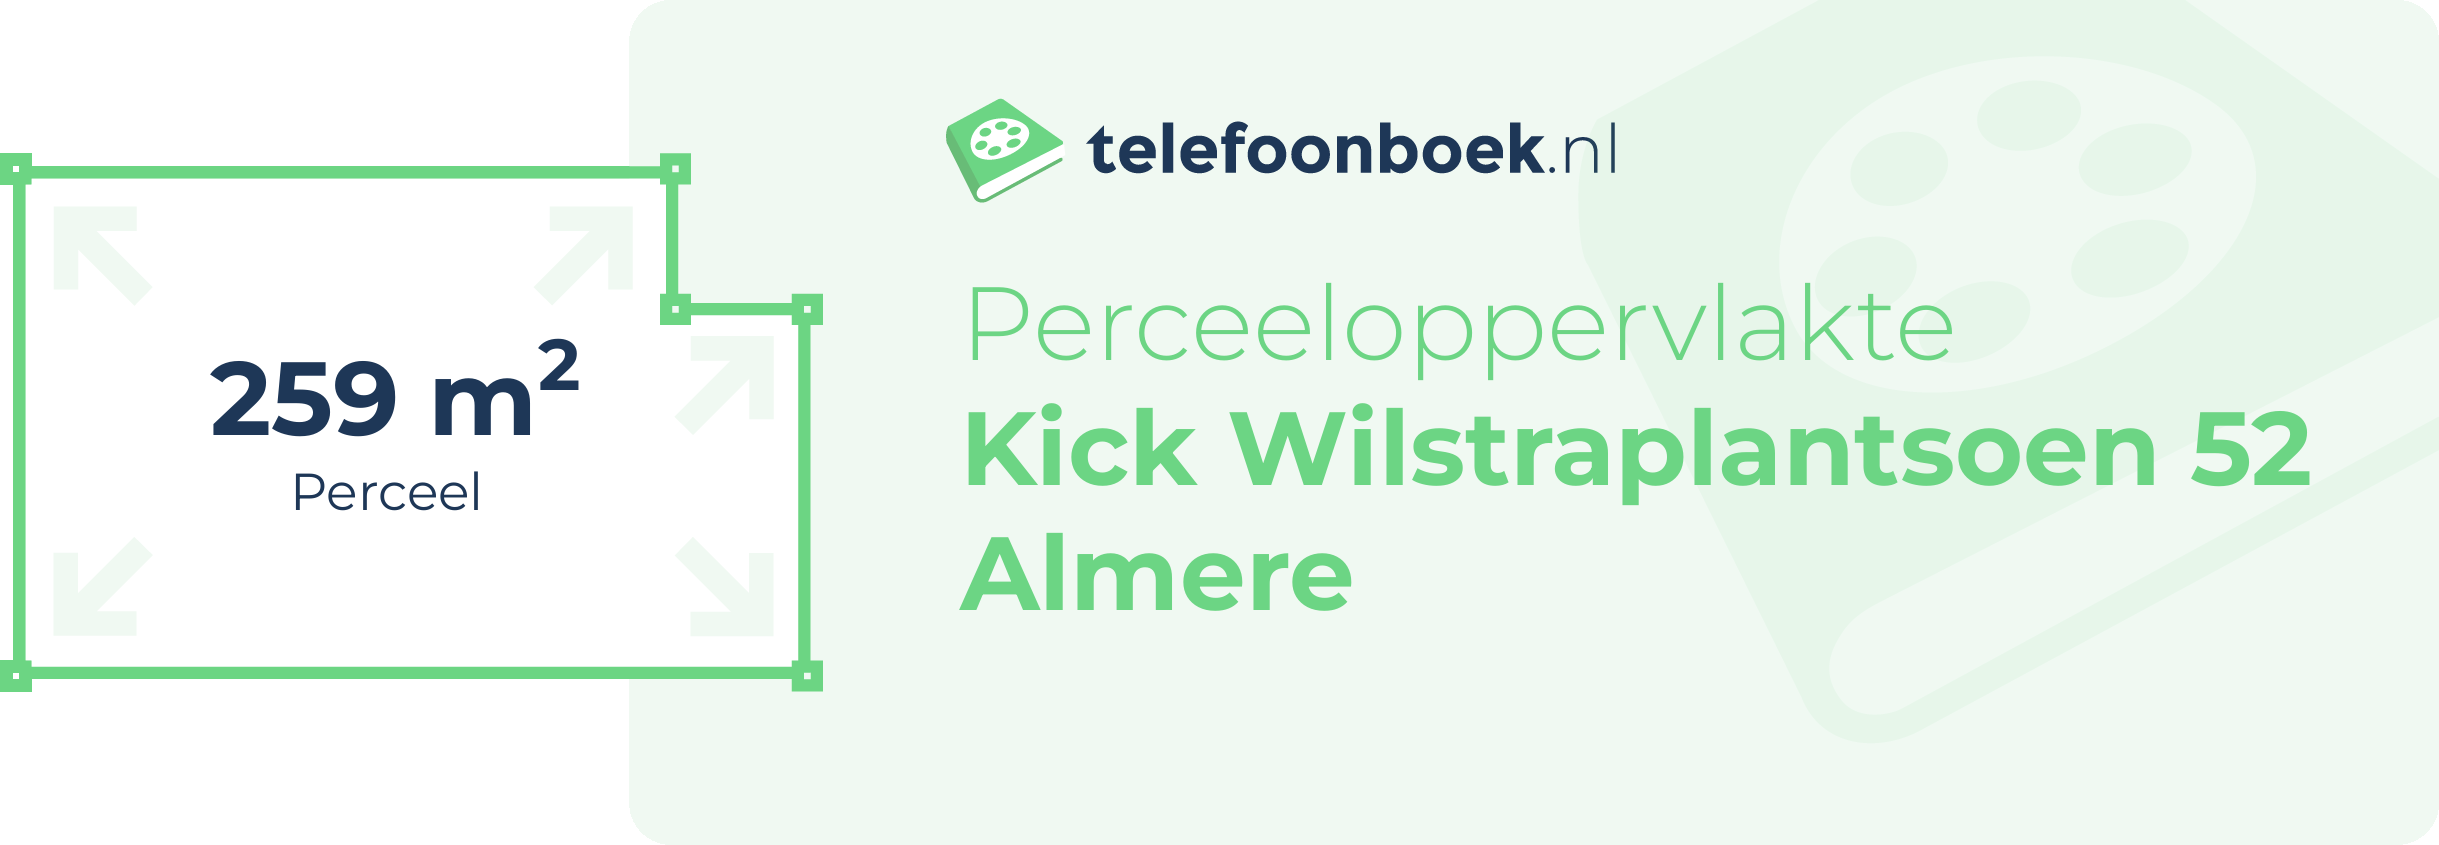 Perceeloppervlakte Kick Wilstraplantsoen 52 Almere